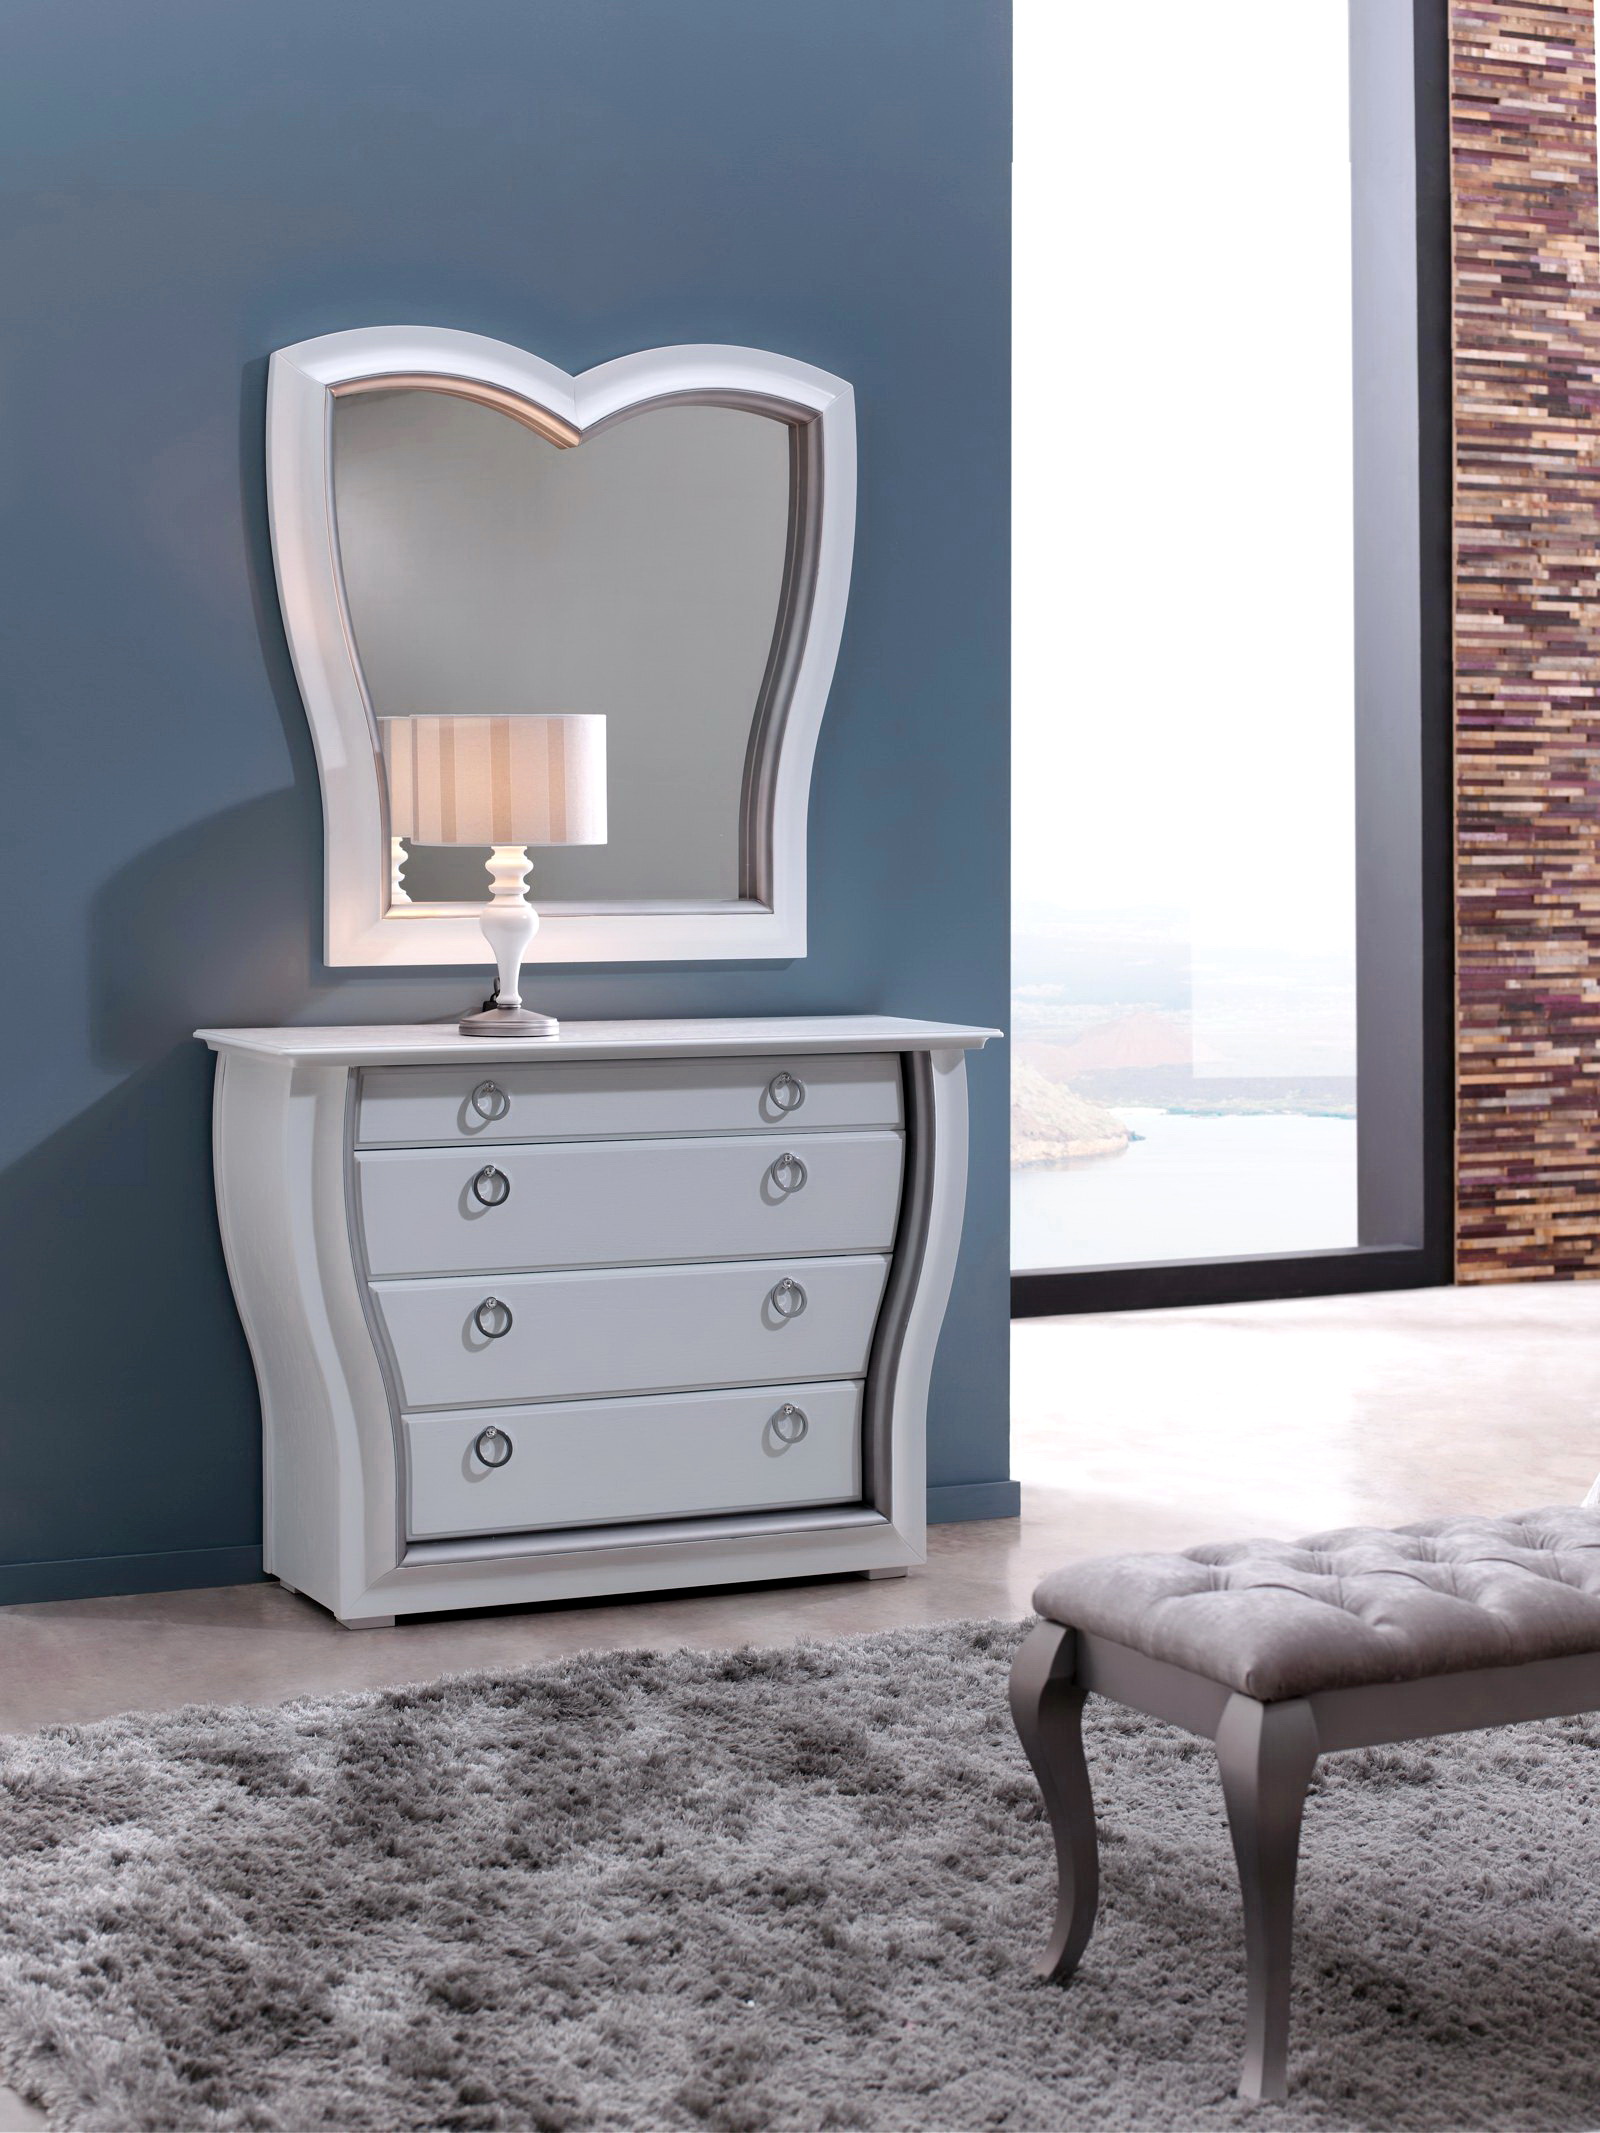 Dormitorio cama tapizada Zache 0006.2 cómoda by Zache Diseño Anzadi Mobiliario en muebles antoñán® León